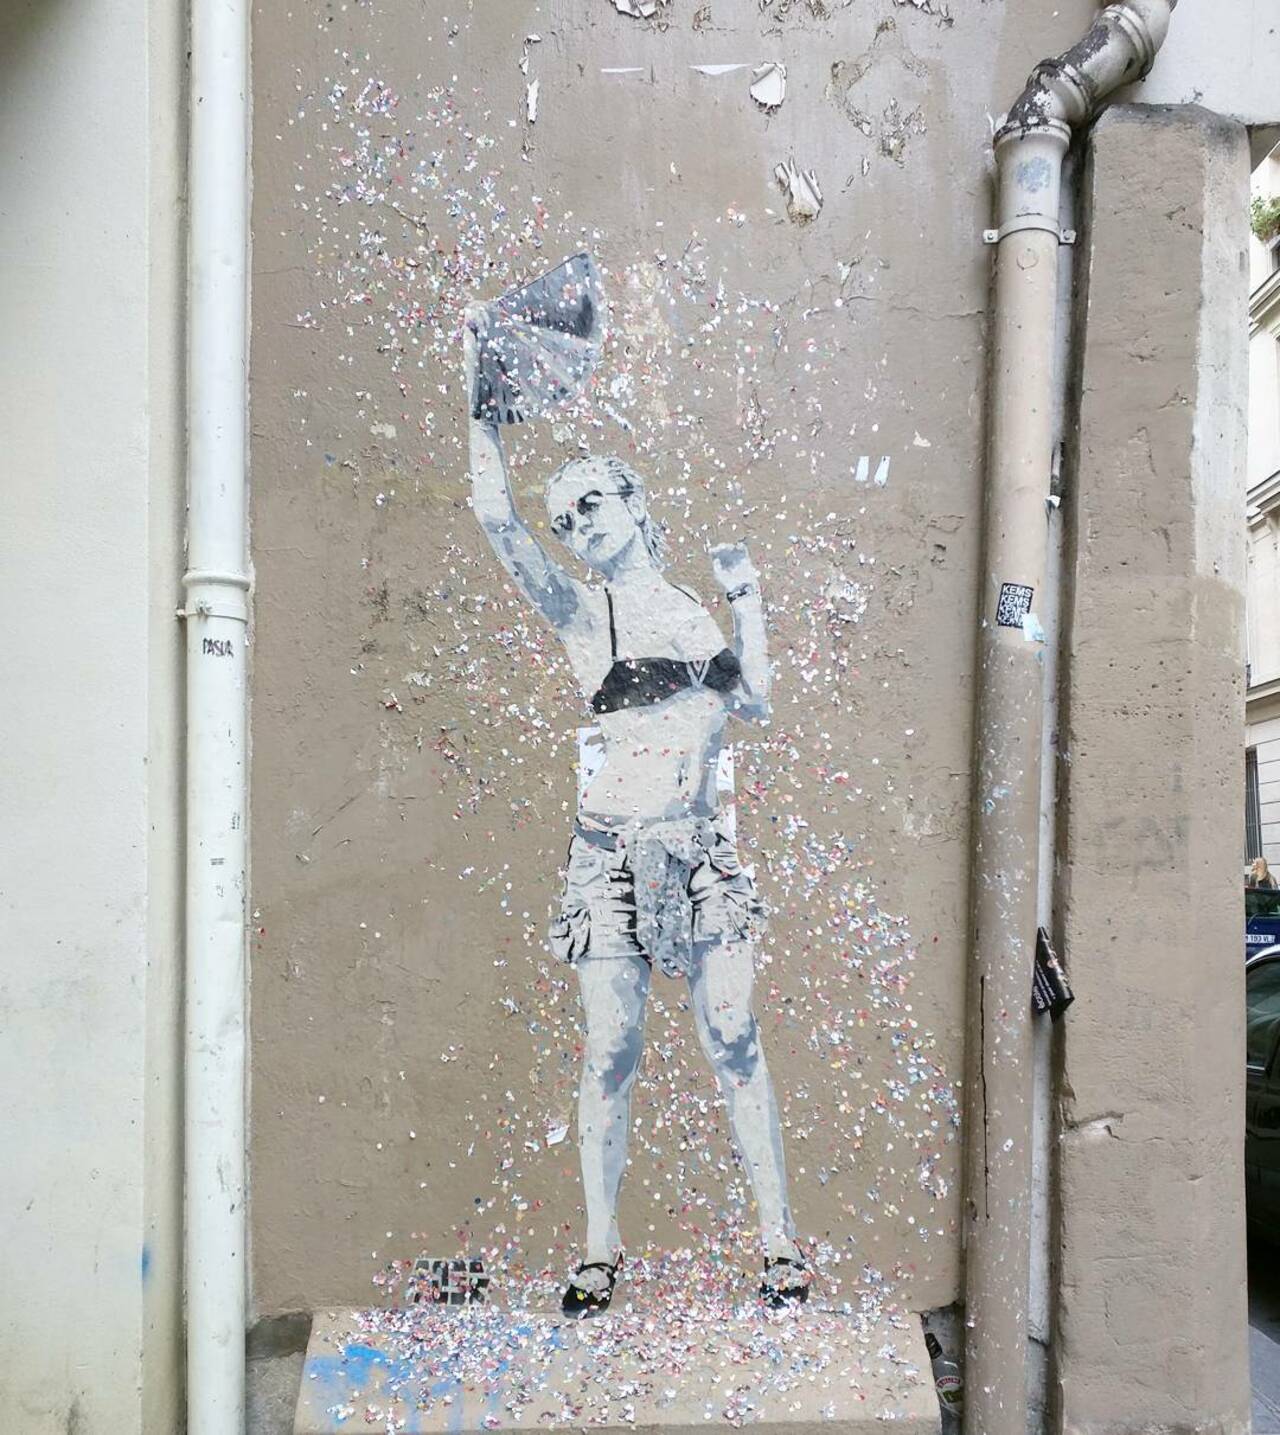 #Paris #graffiti photo by @alphaquadra http://ift.tt/1K1VJiE #StreetArt http://t.co/150vdDvutS